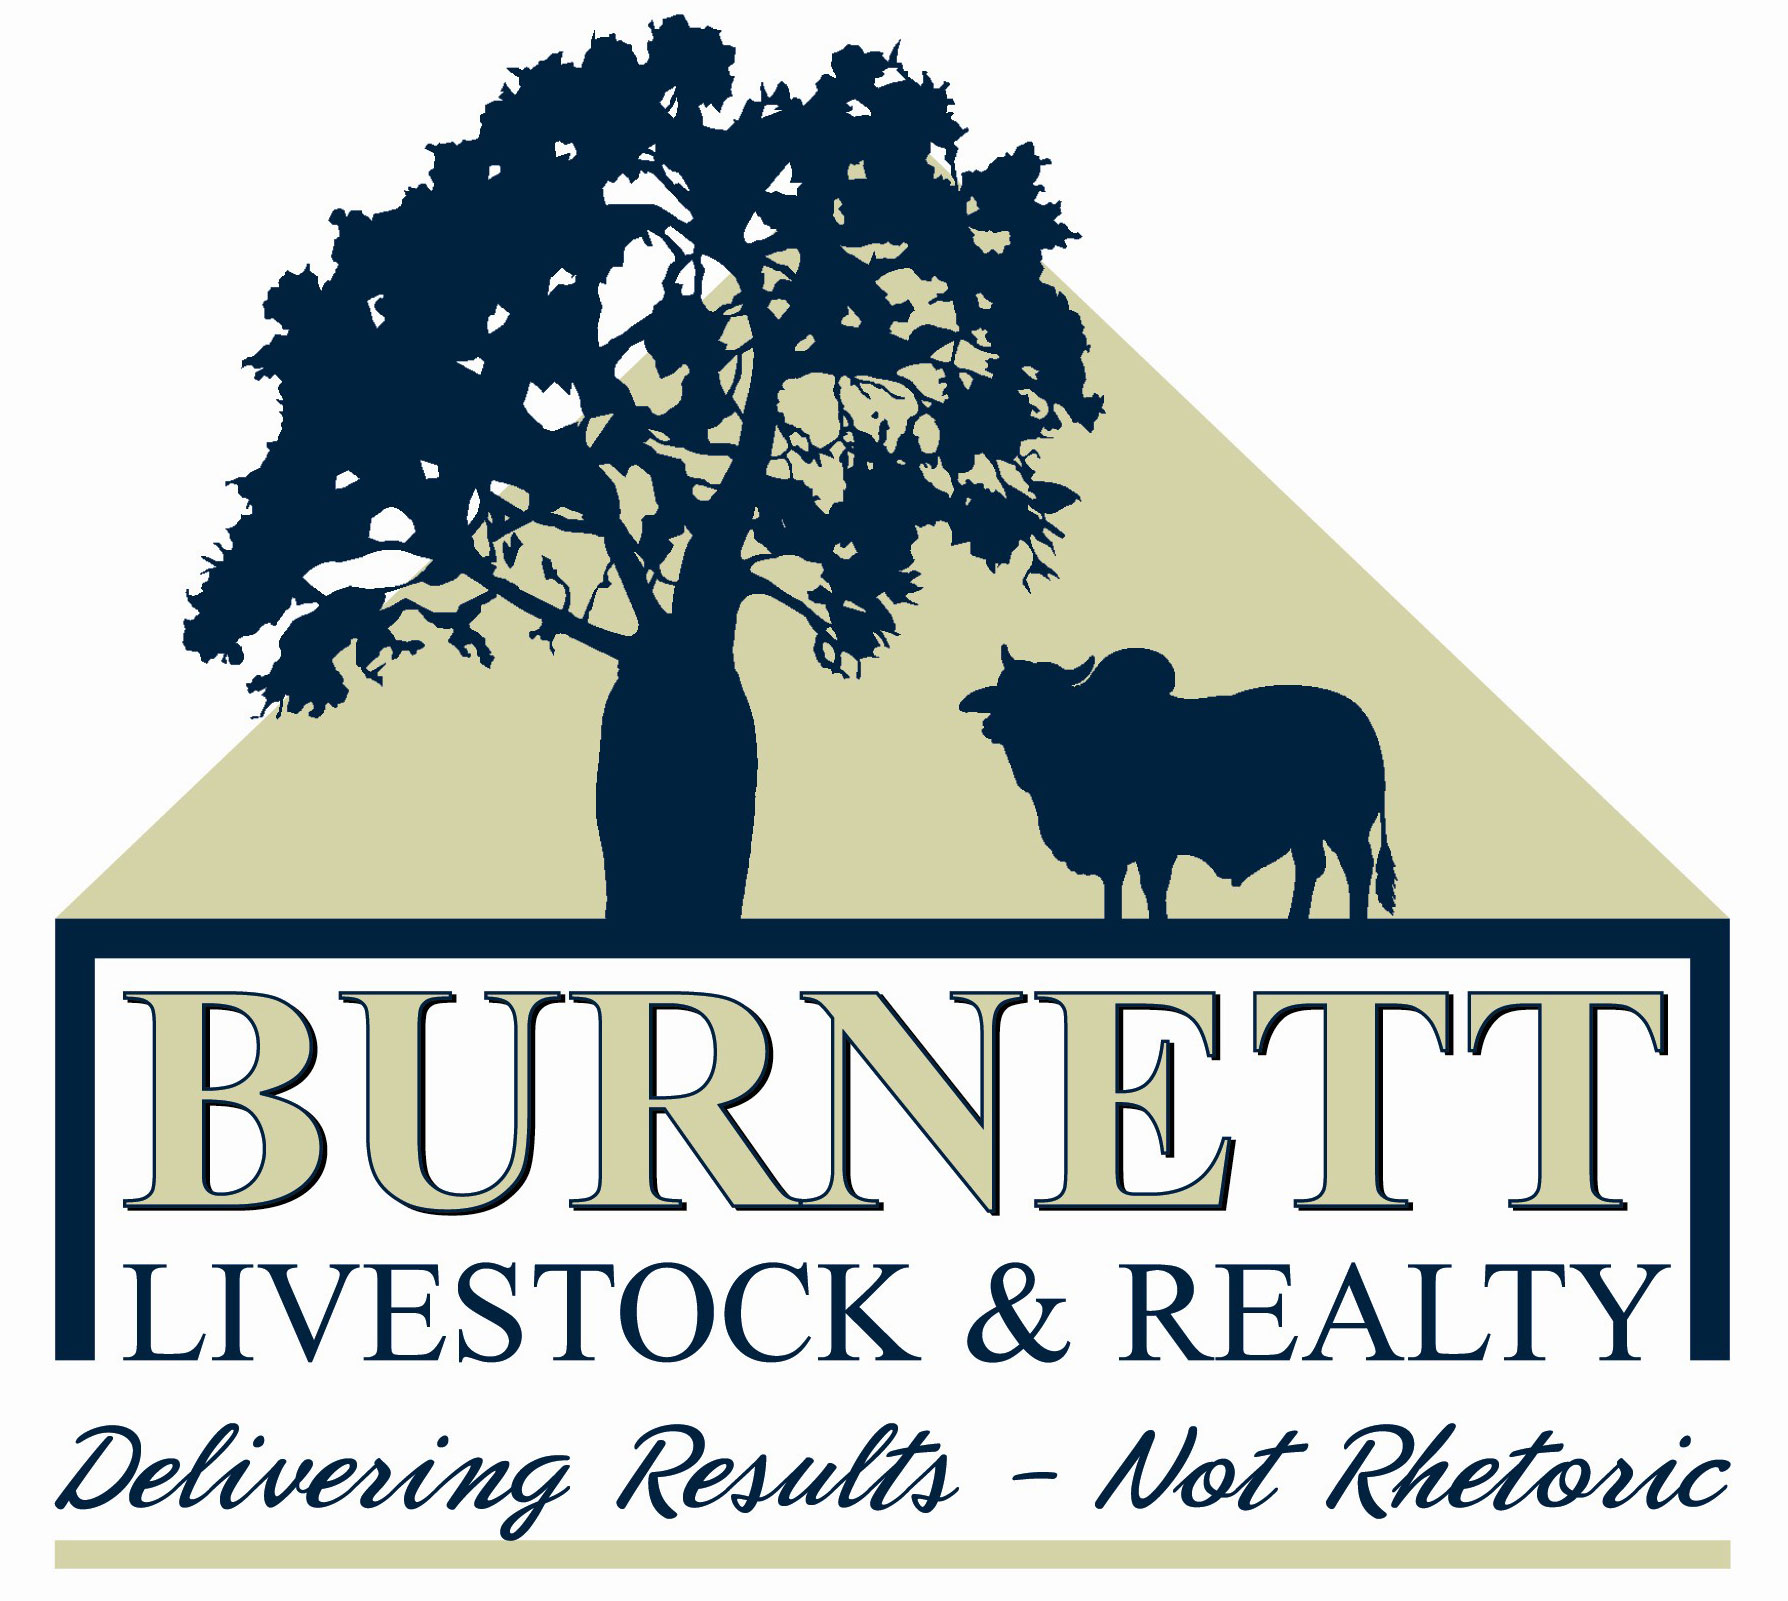 Burnett Livestock and Realty